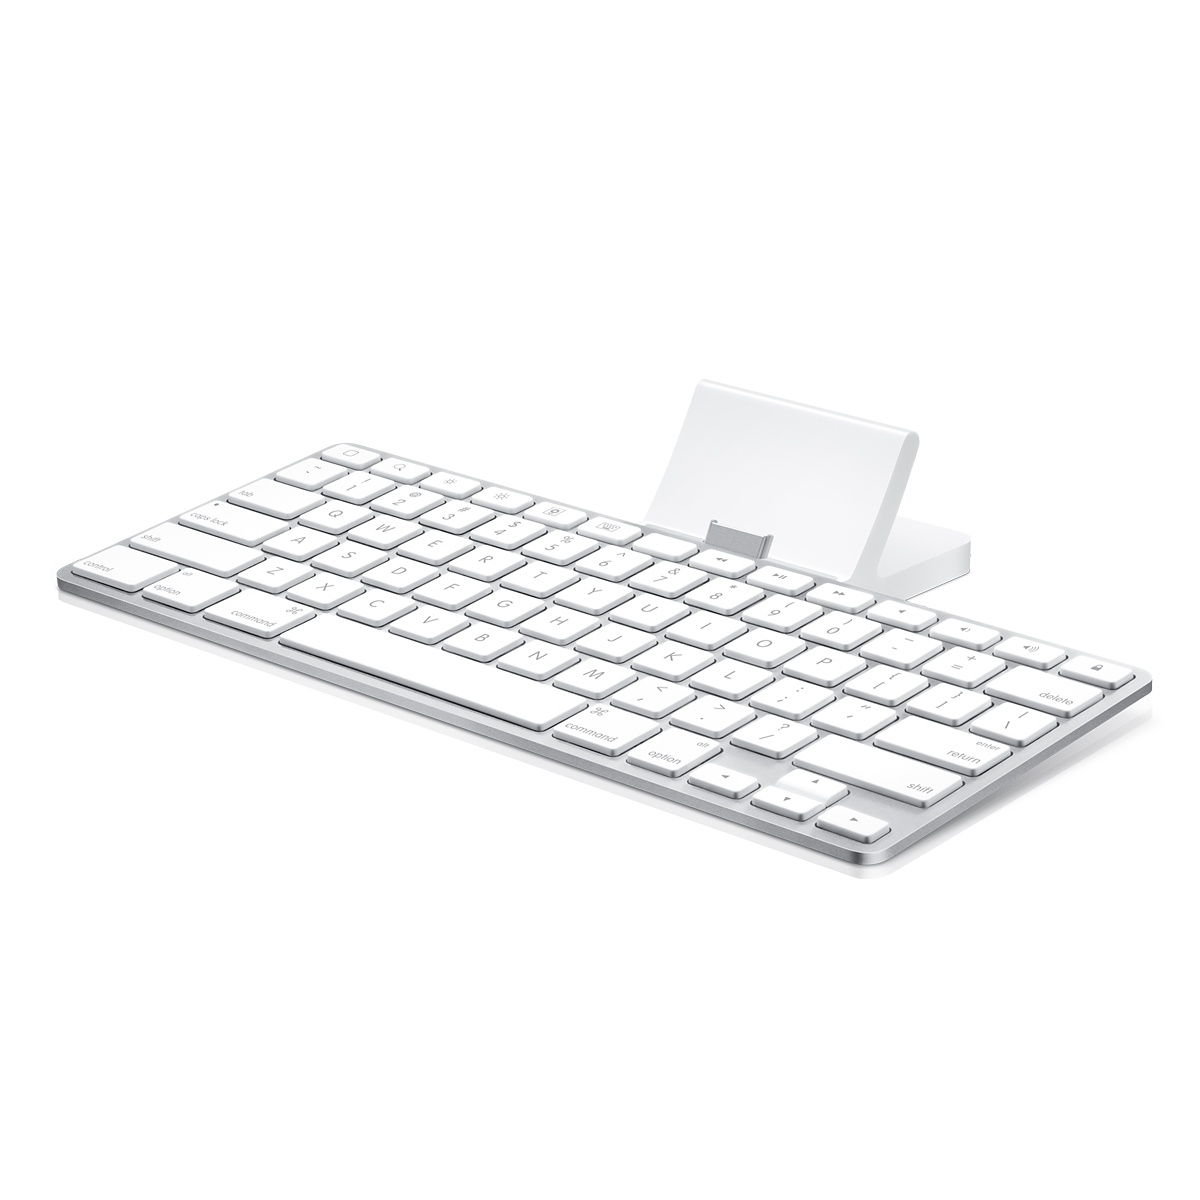 Apple iPad Accessories : iPad Keyboard Dock